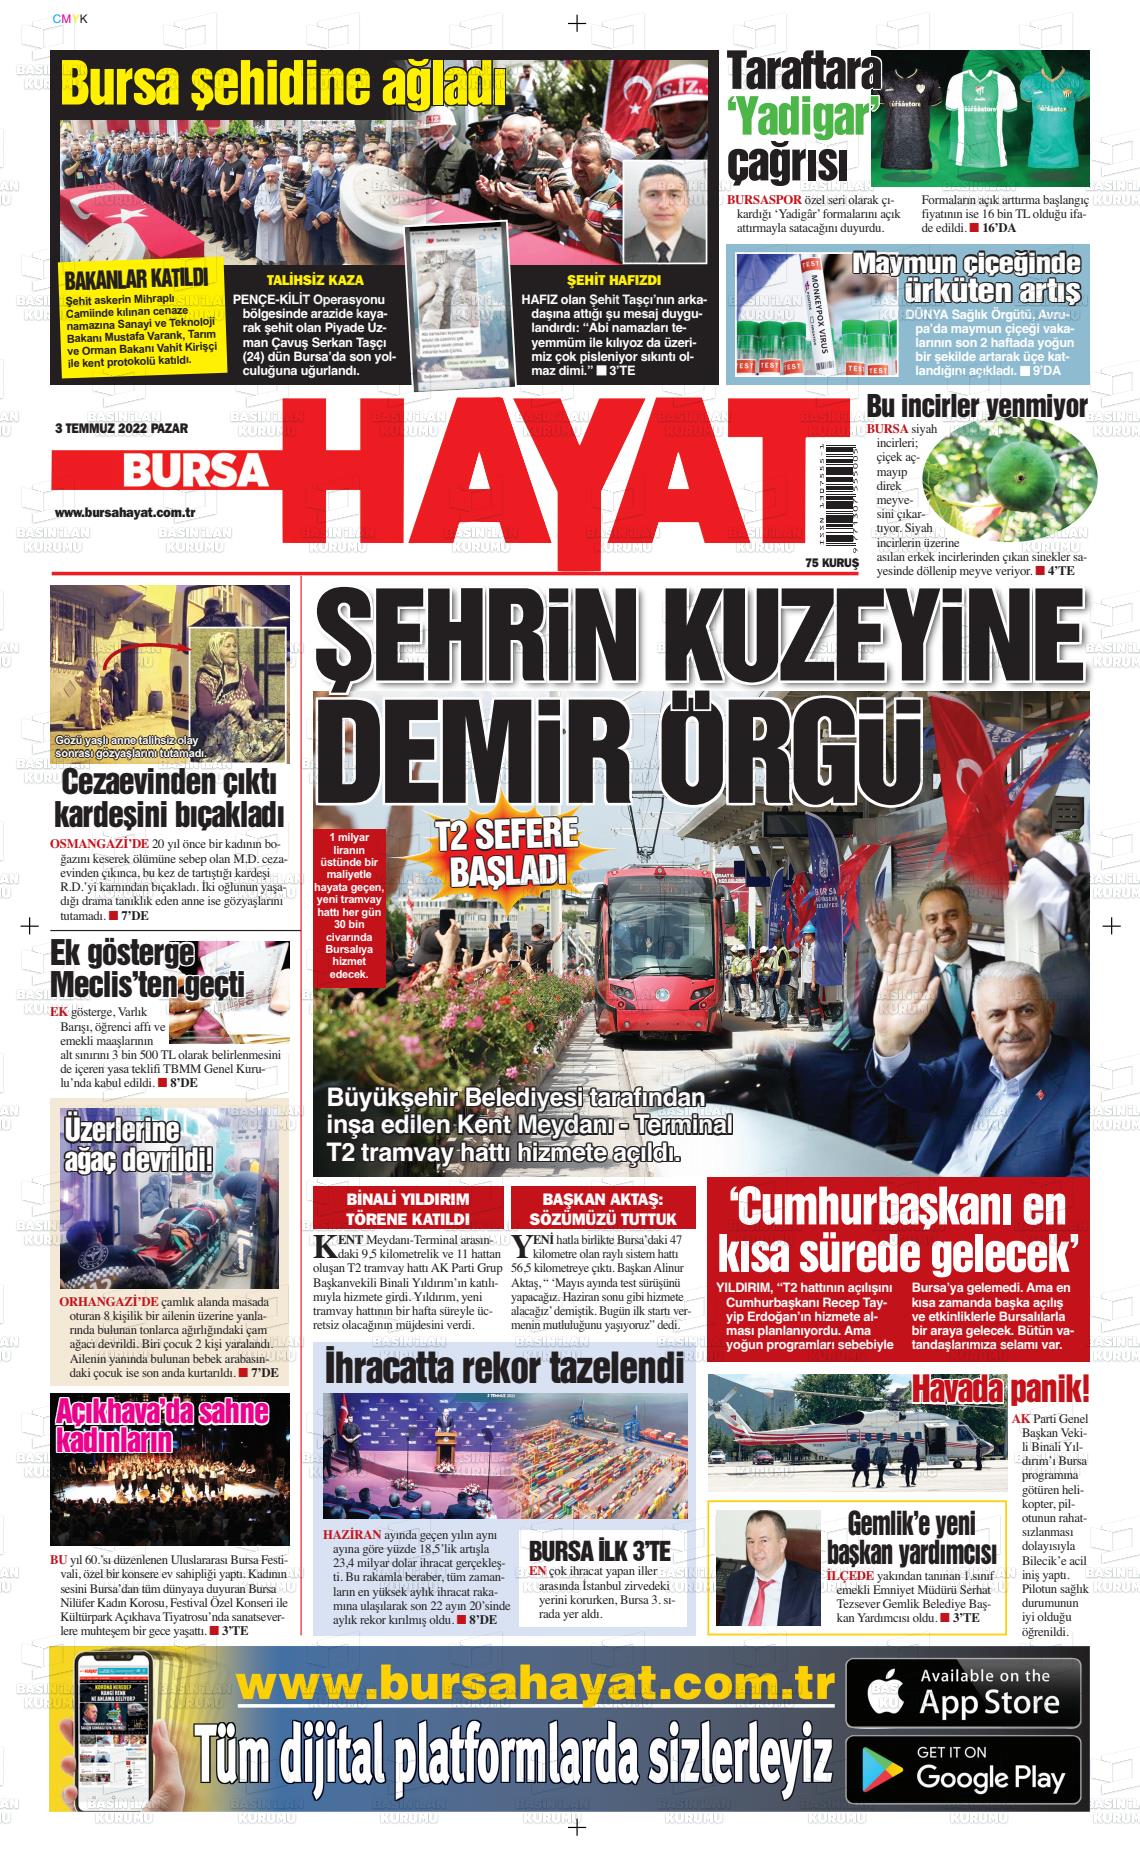 03 Temmuz 2022 Bursa Hayat Gazete Manşeti